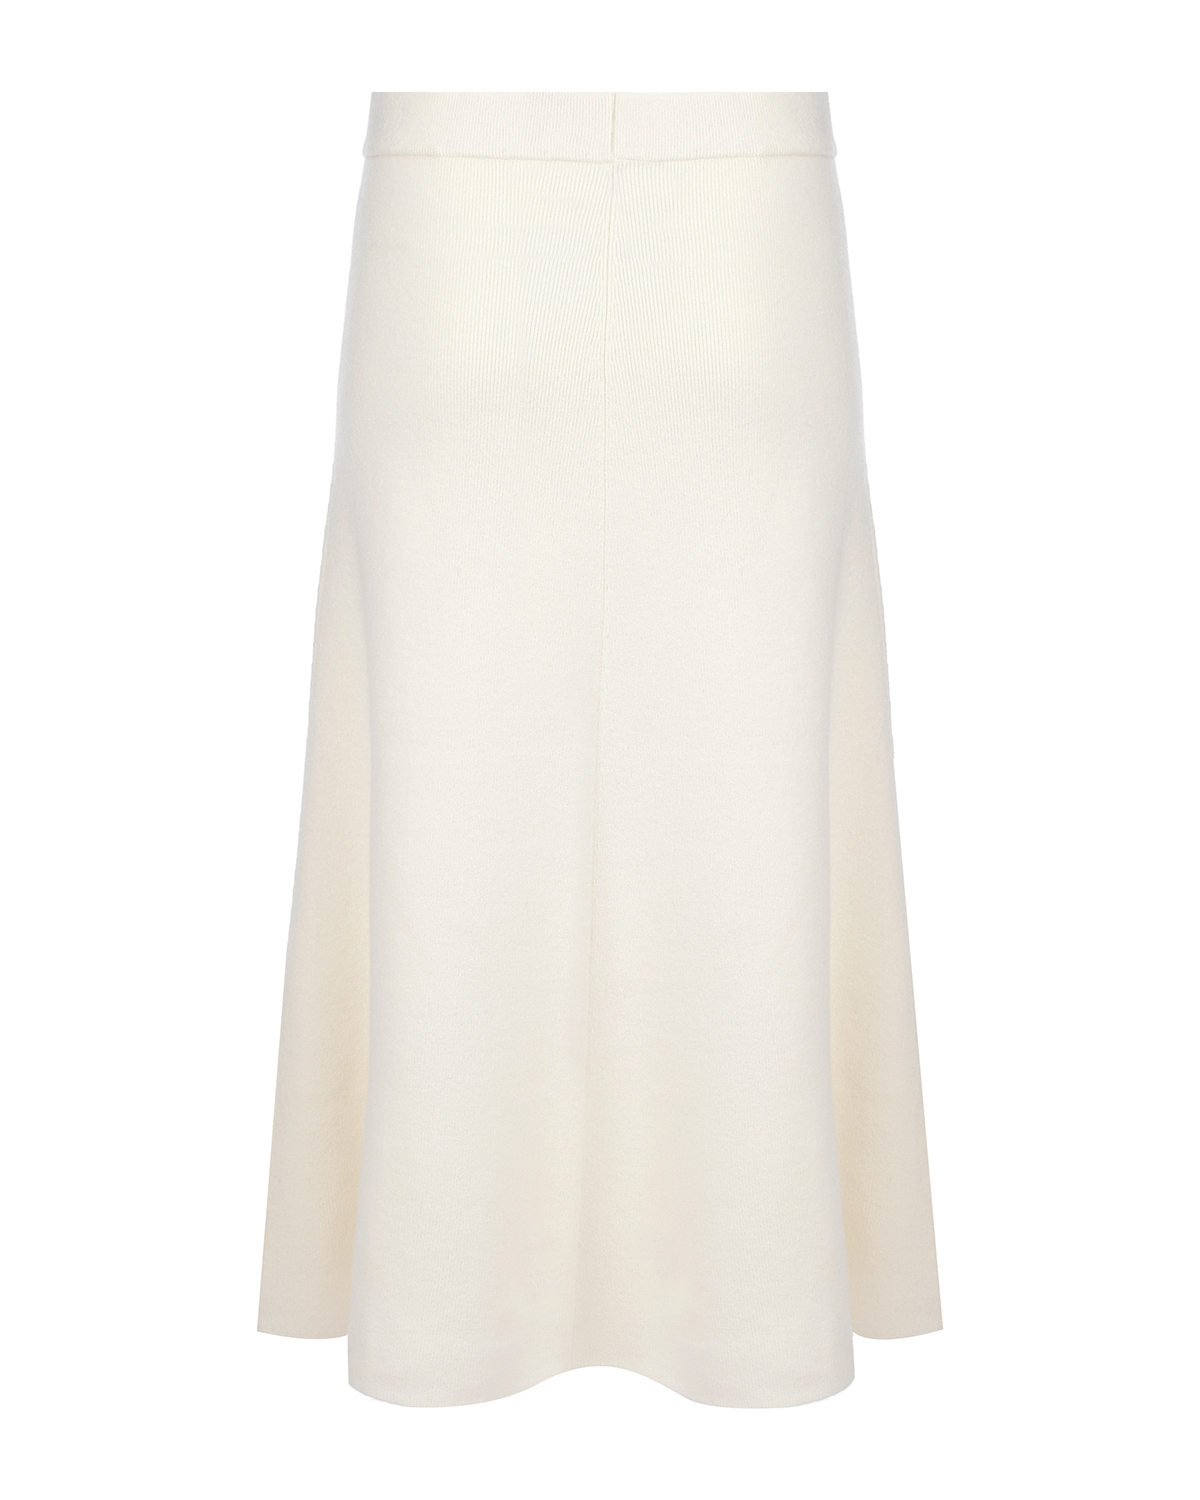 Кашемировая юбка молочного цвета Arch4, размер 40 - фото 6